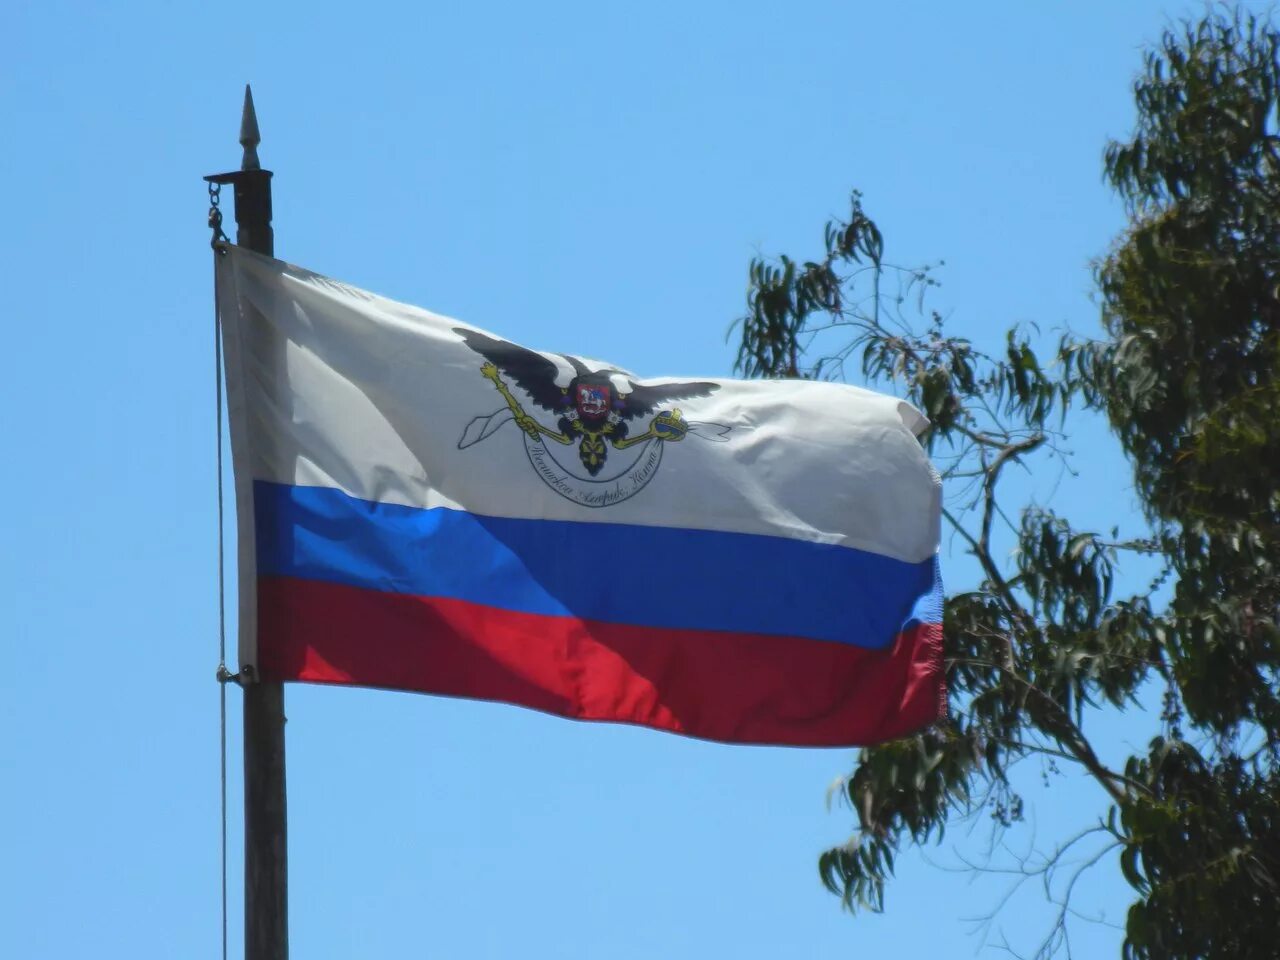 Форт Росс флаг. Аляска русская Америка российско американская компания. Флаг российско-американской компании 1806 год. Форт Росс США. Колония аляска